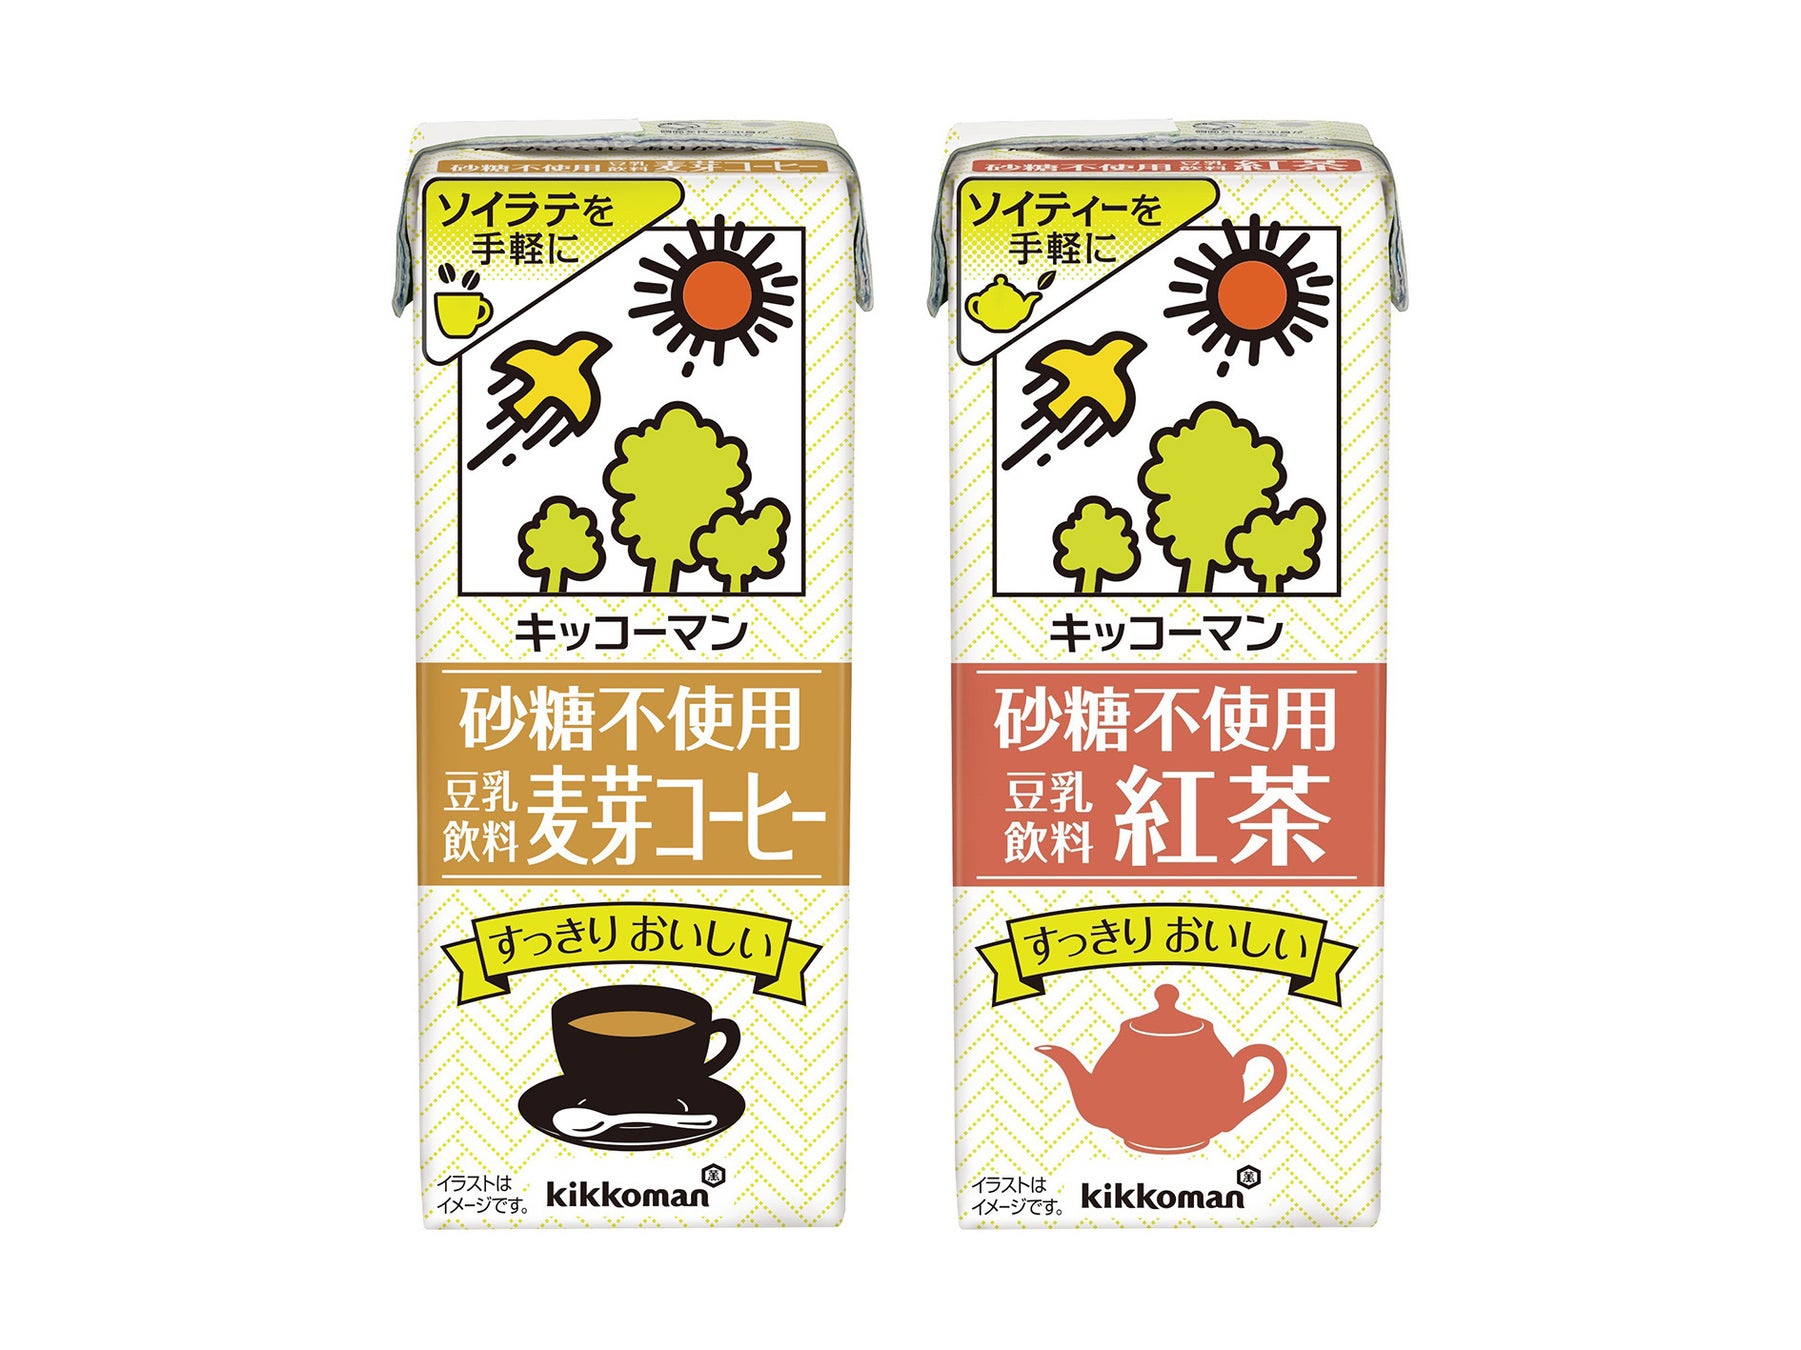 キッコーマン豆乳の「砂糖不使用」シリーズとして、「砂糖不使用 豆乳飲料 麦芽コーヒー」「砂糖不使用 豆乳飲料 紅茶」新発売！